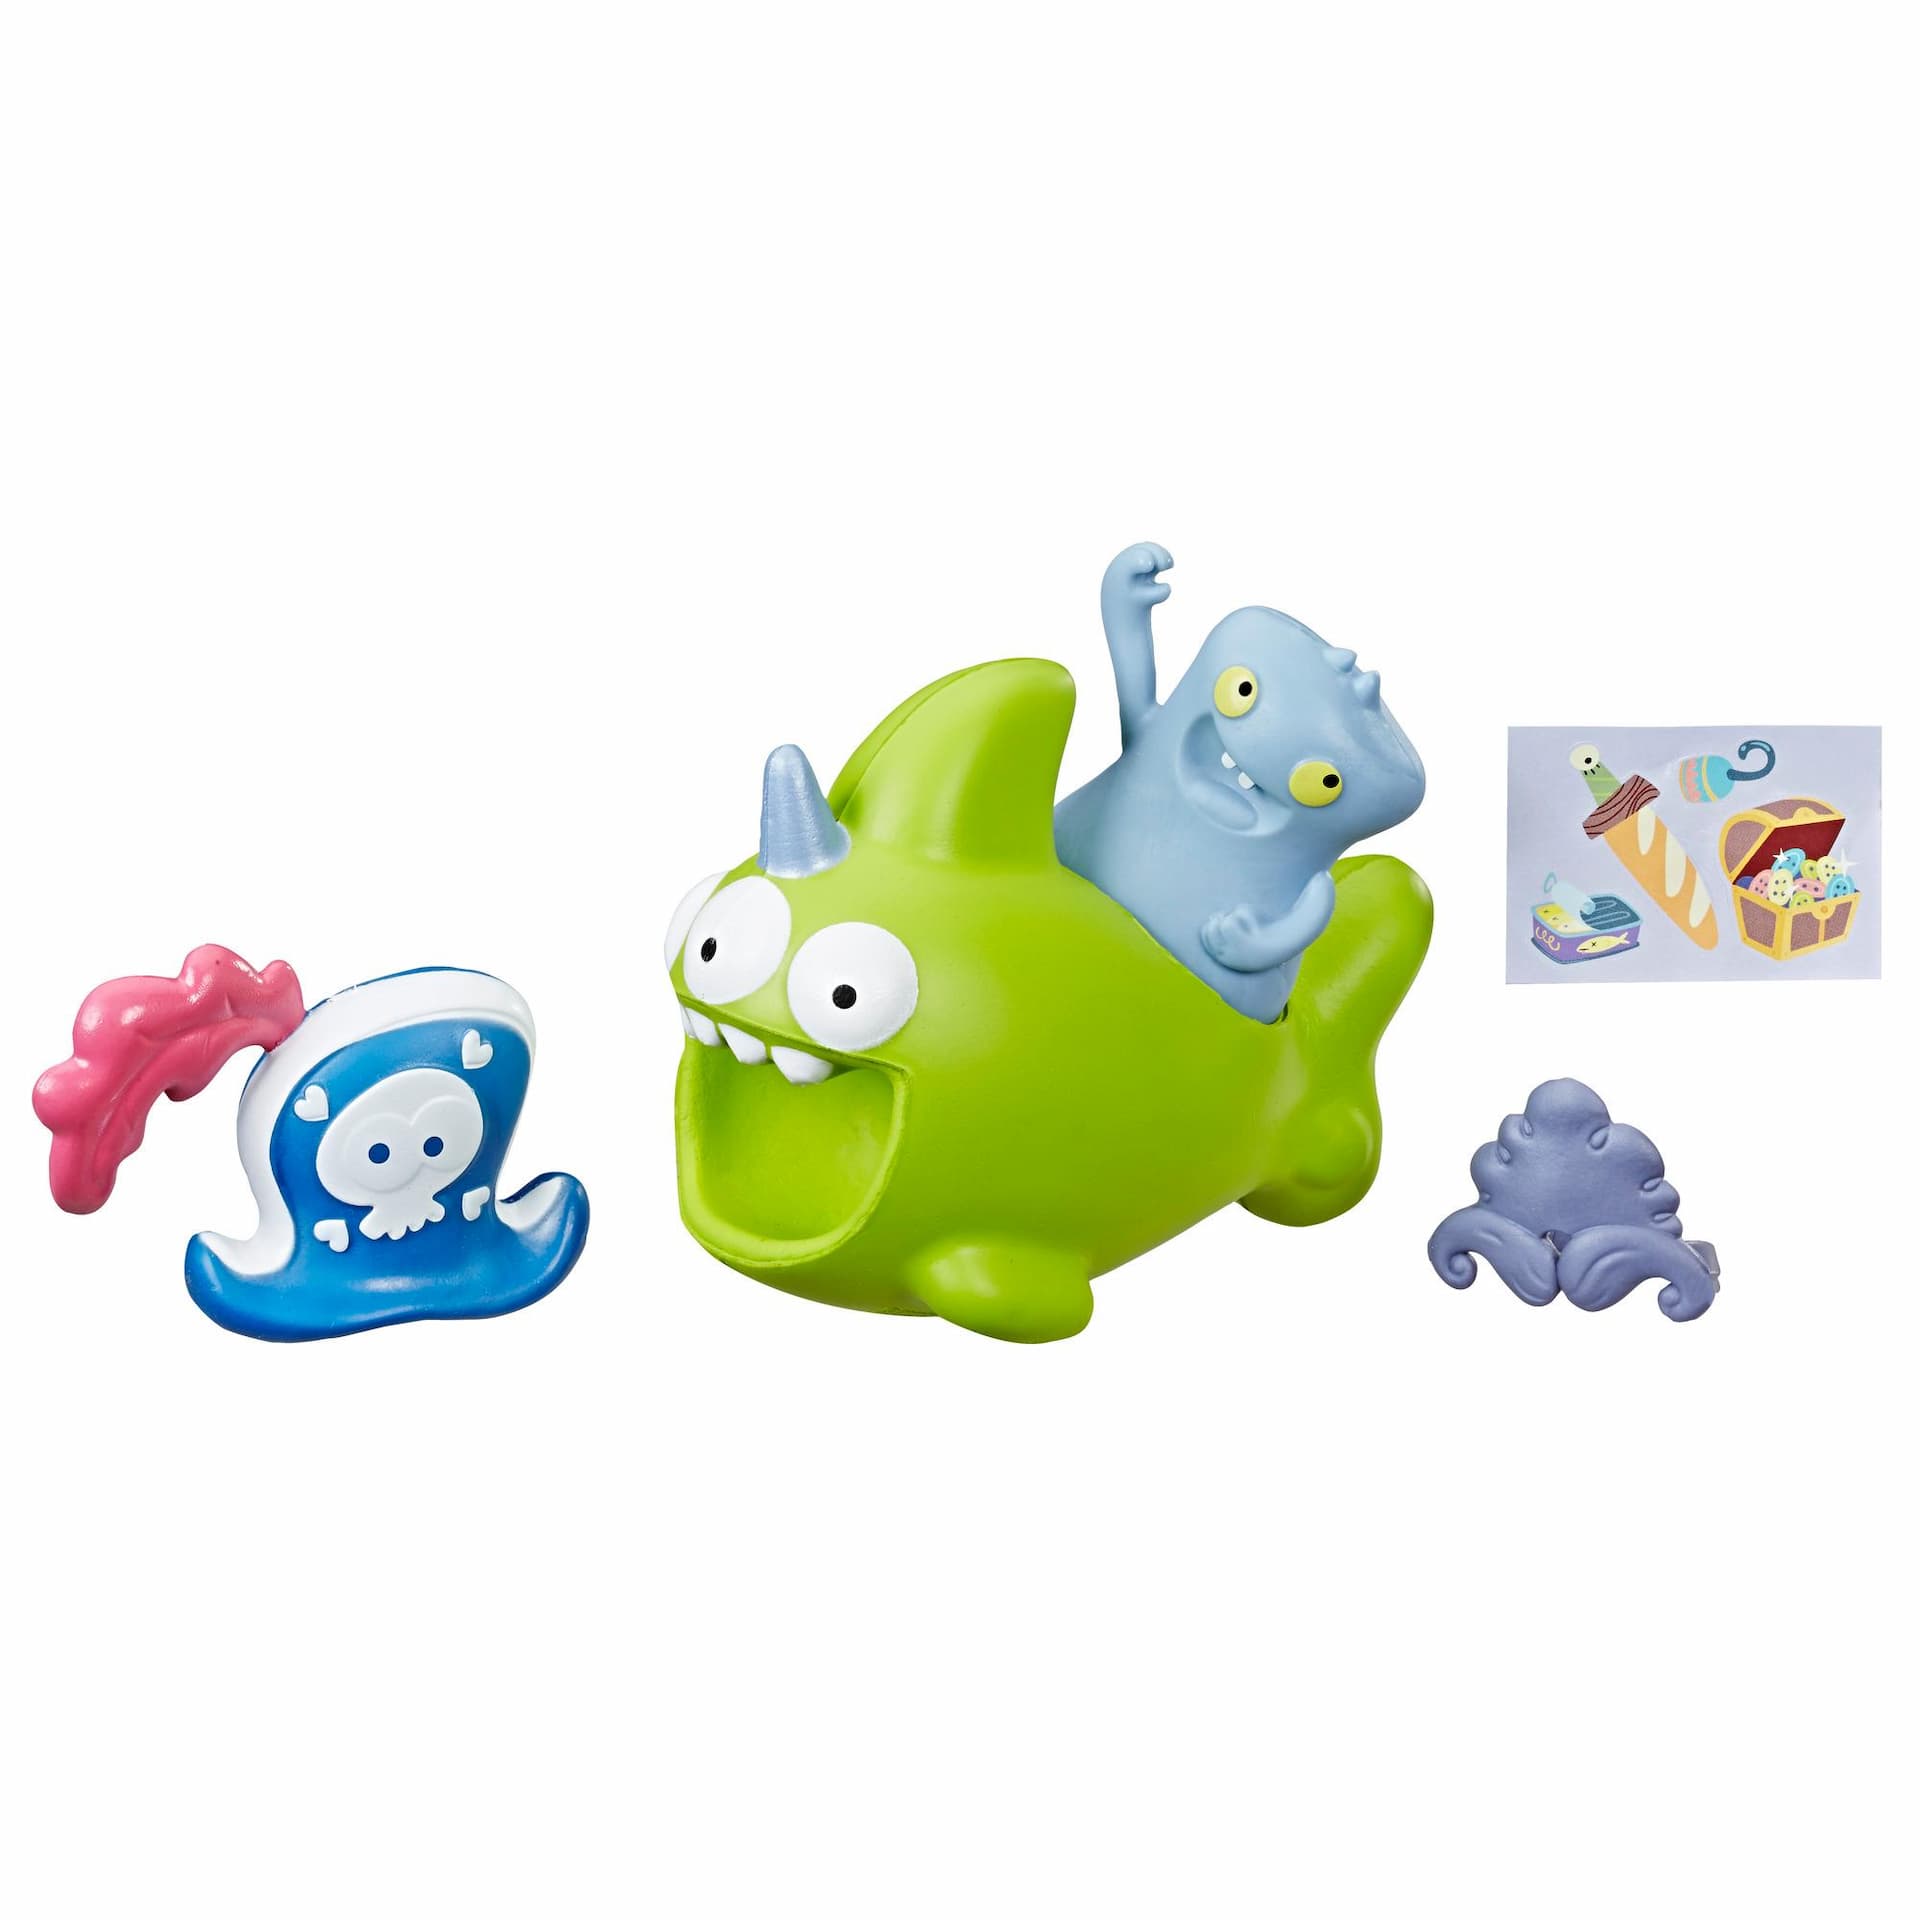 UglyDolls Babo y Sharwhal-móvil blandito, 2 figuras de juguete con accesorios